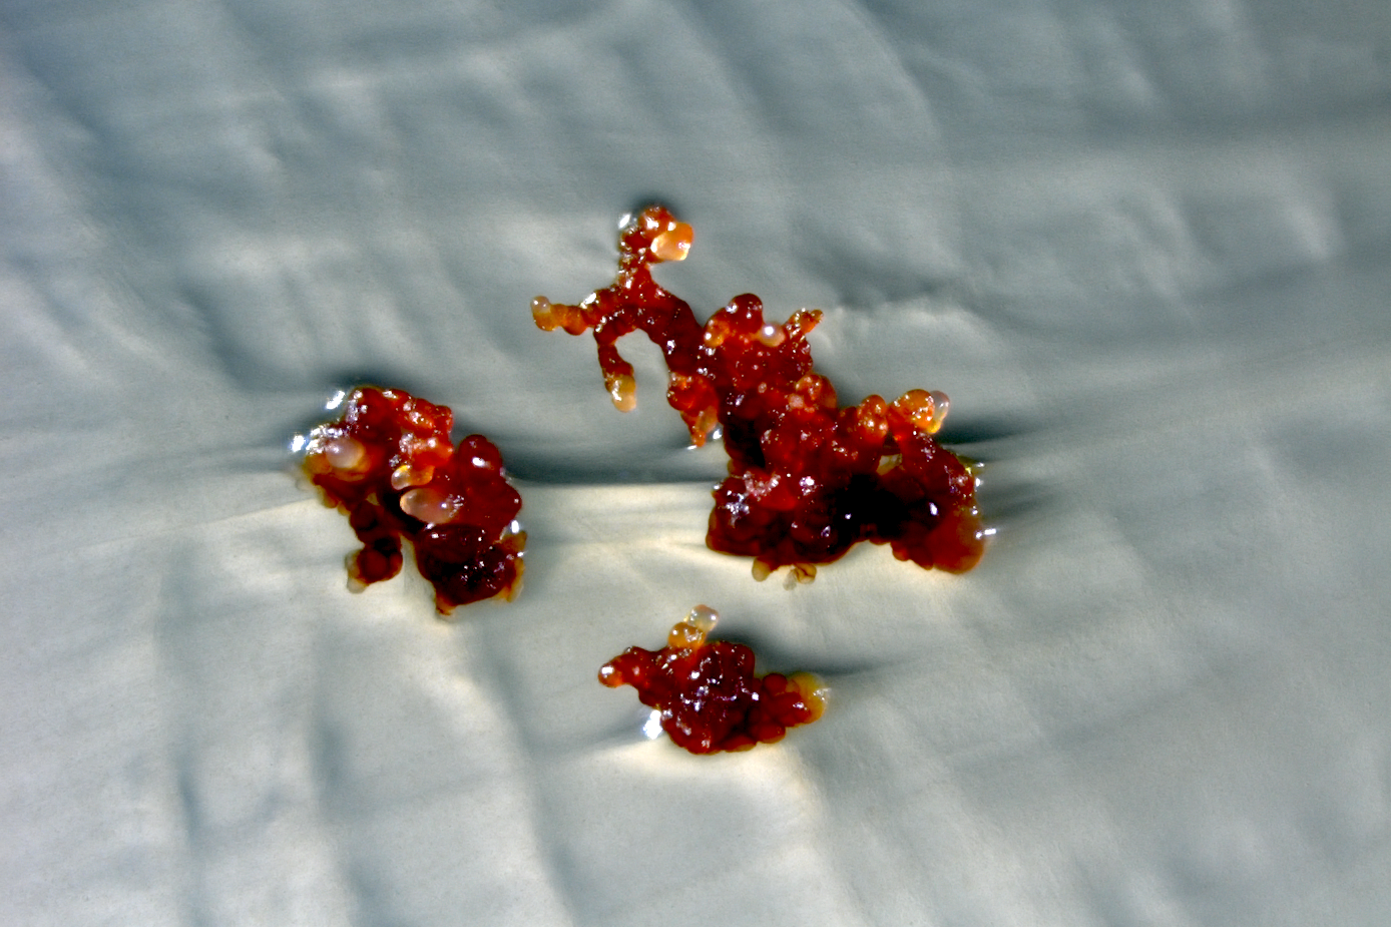 Stereomikroskopische Aufnahme von Cystobacter violaceus in rot